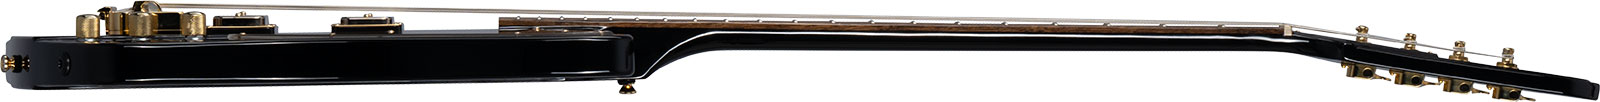 Epiphone Rex Brown Thunderbird Signature Lau - Ebony - Bajo eléctrico de cuerpo sólido - Variation 2